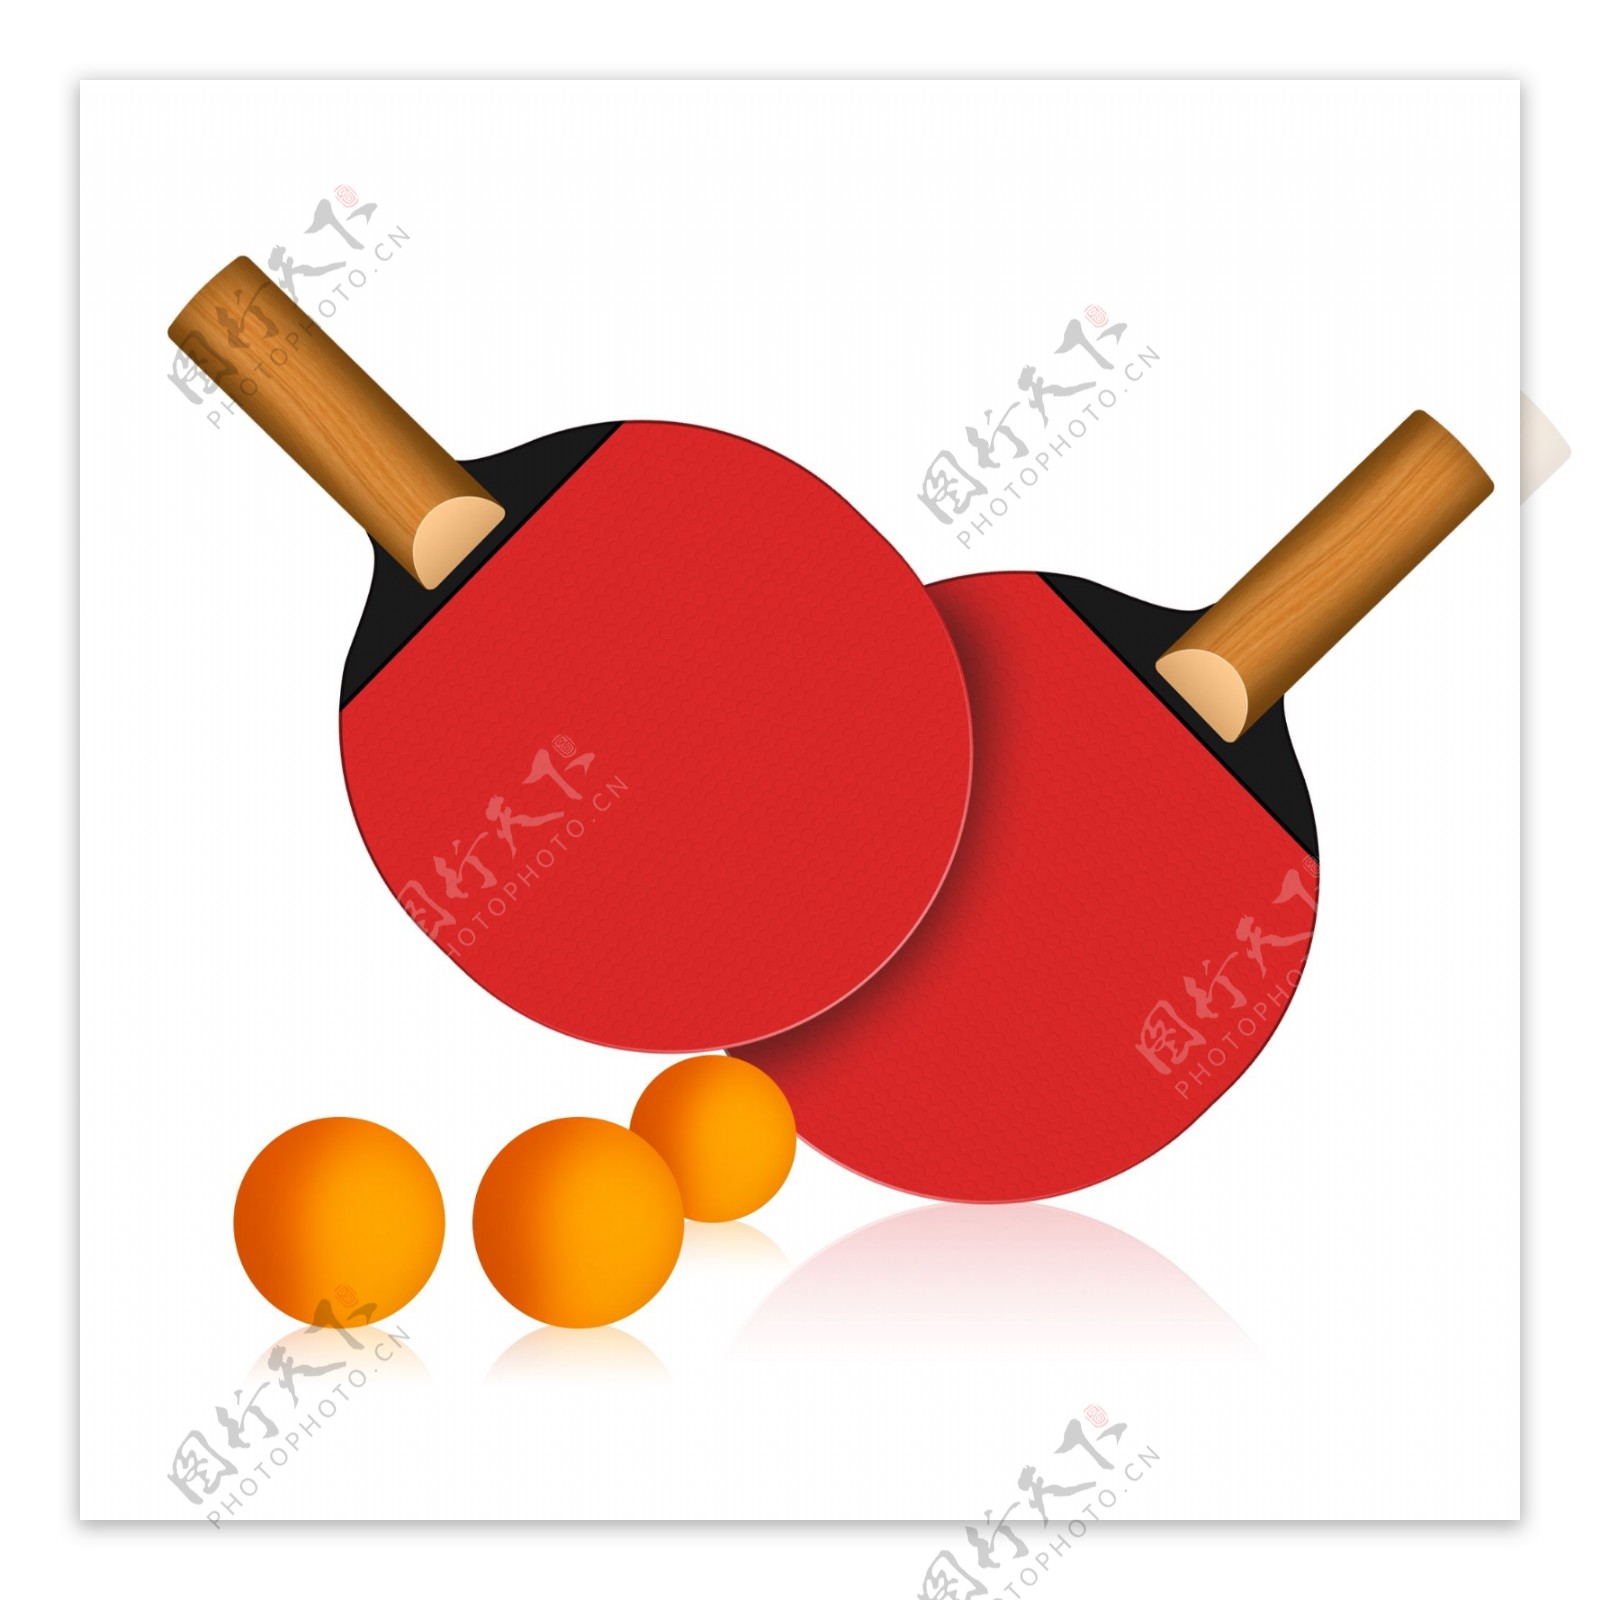 乒乓球拍与乒乓球效果素材元素